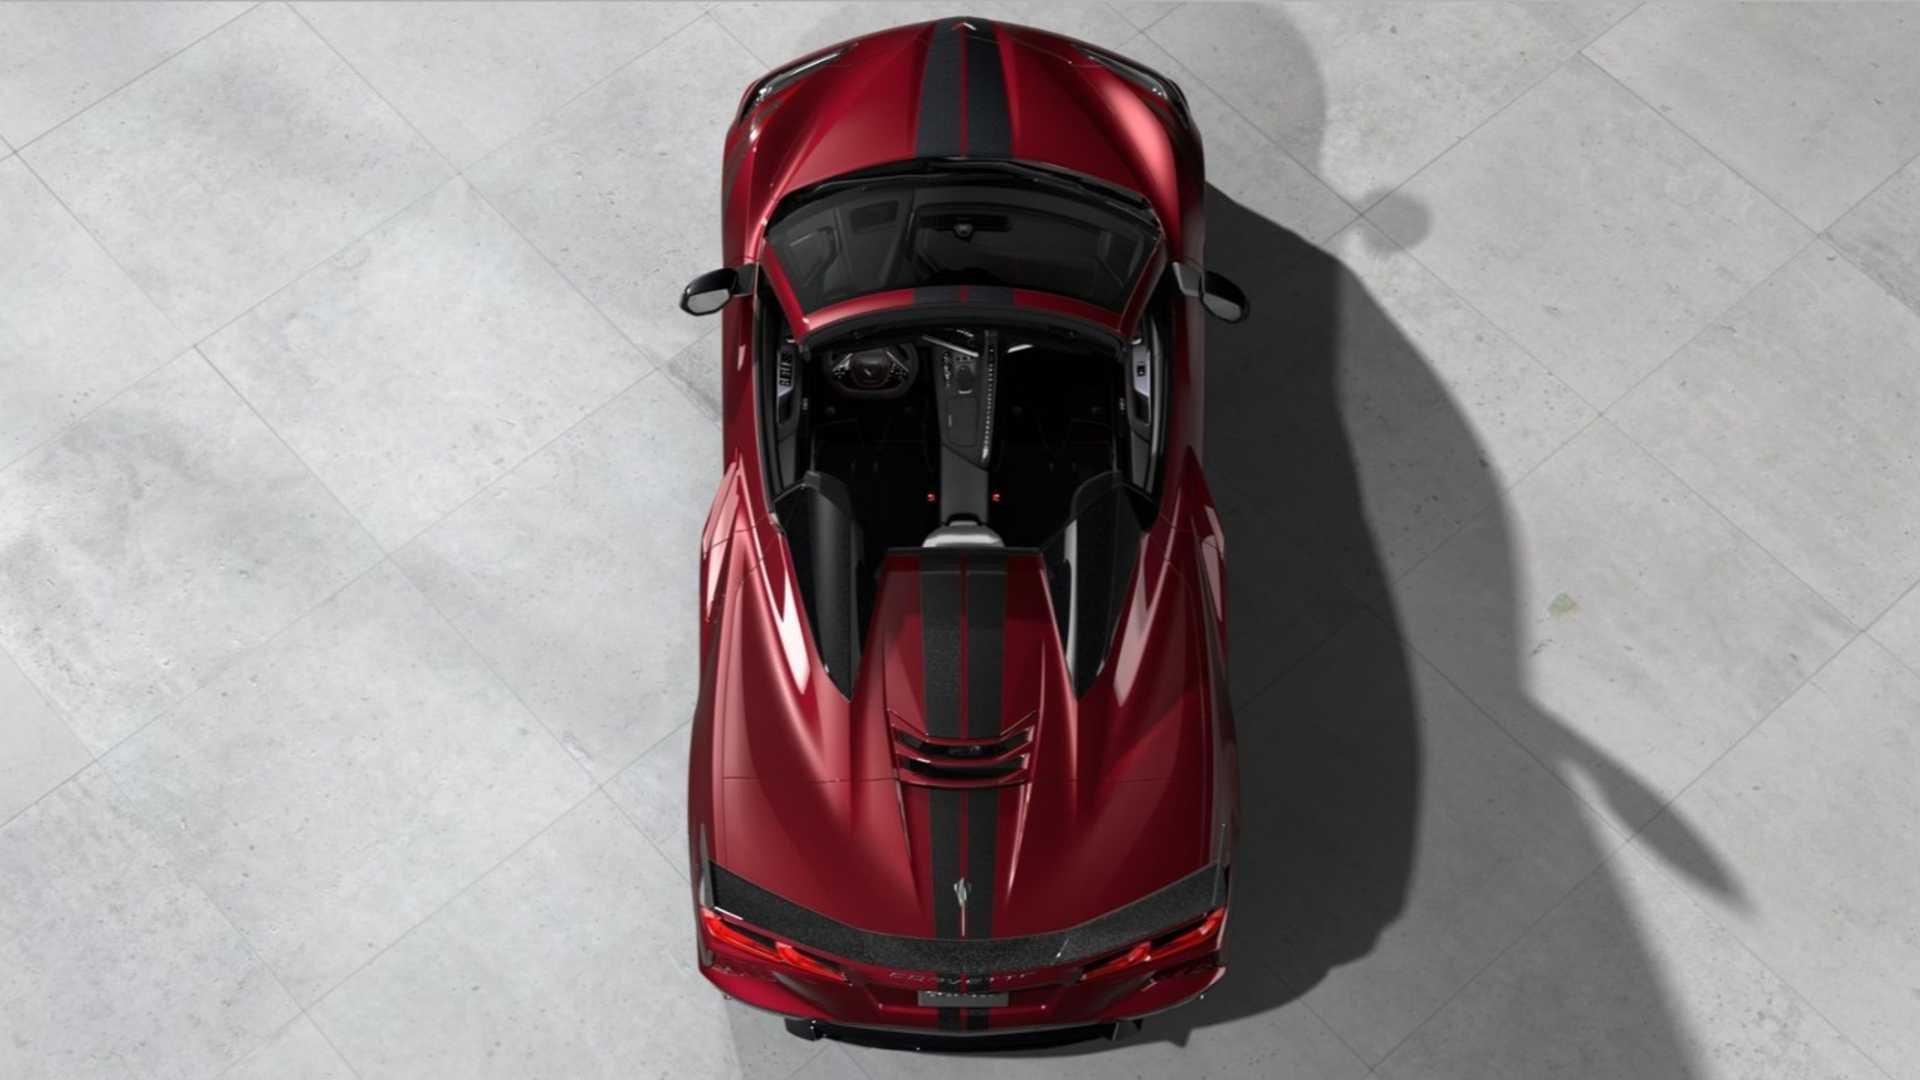 2020 chevy corvette stingray convertible most expensive version 2 - گرانترین کوروت مدل 2020 با قیمت 114 هزار دلاری